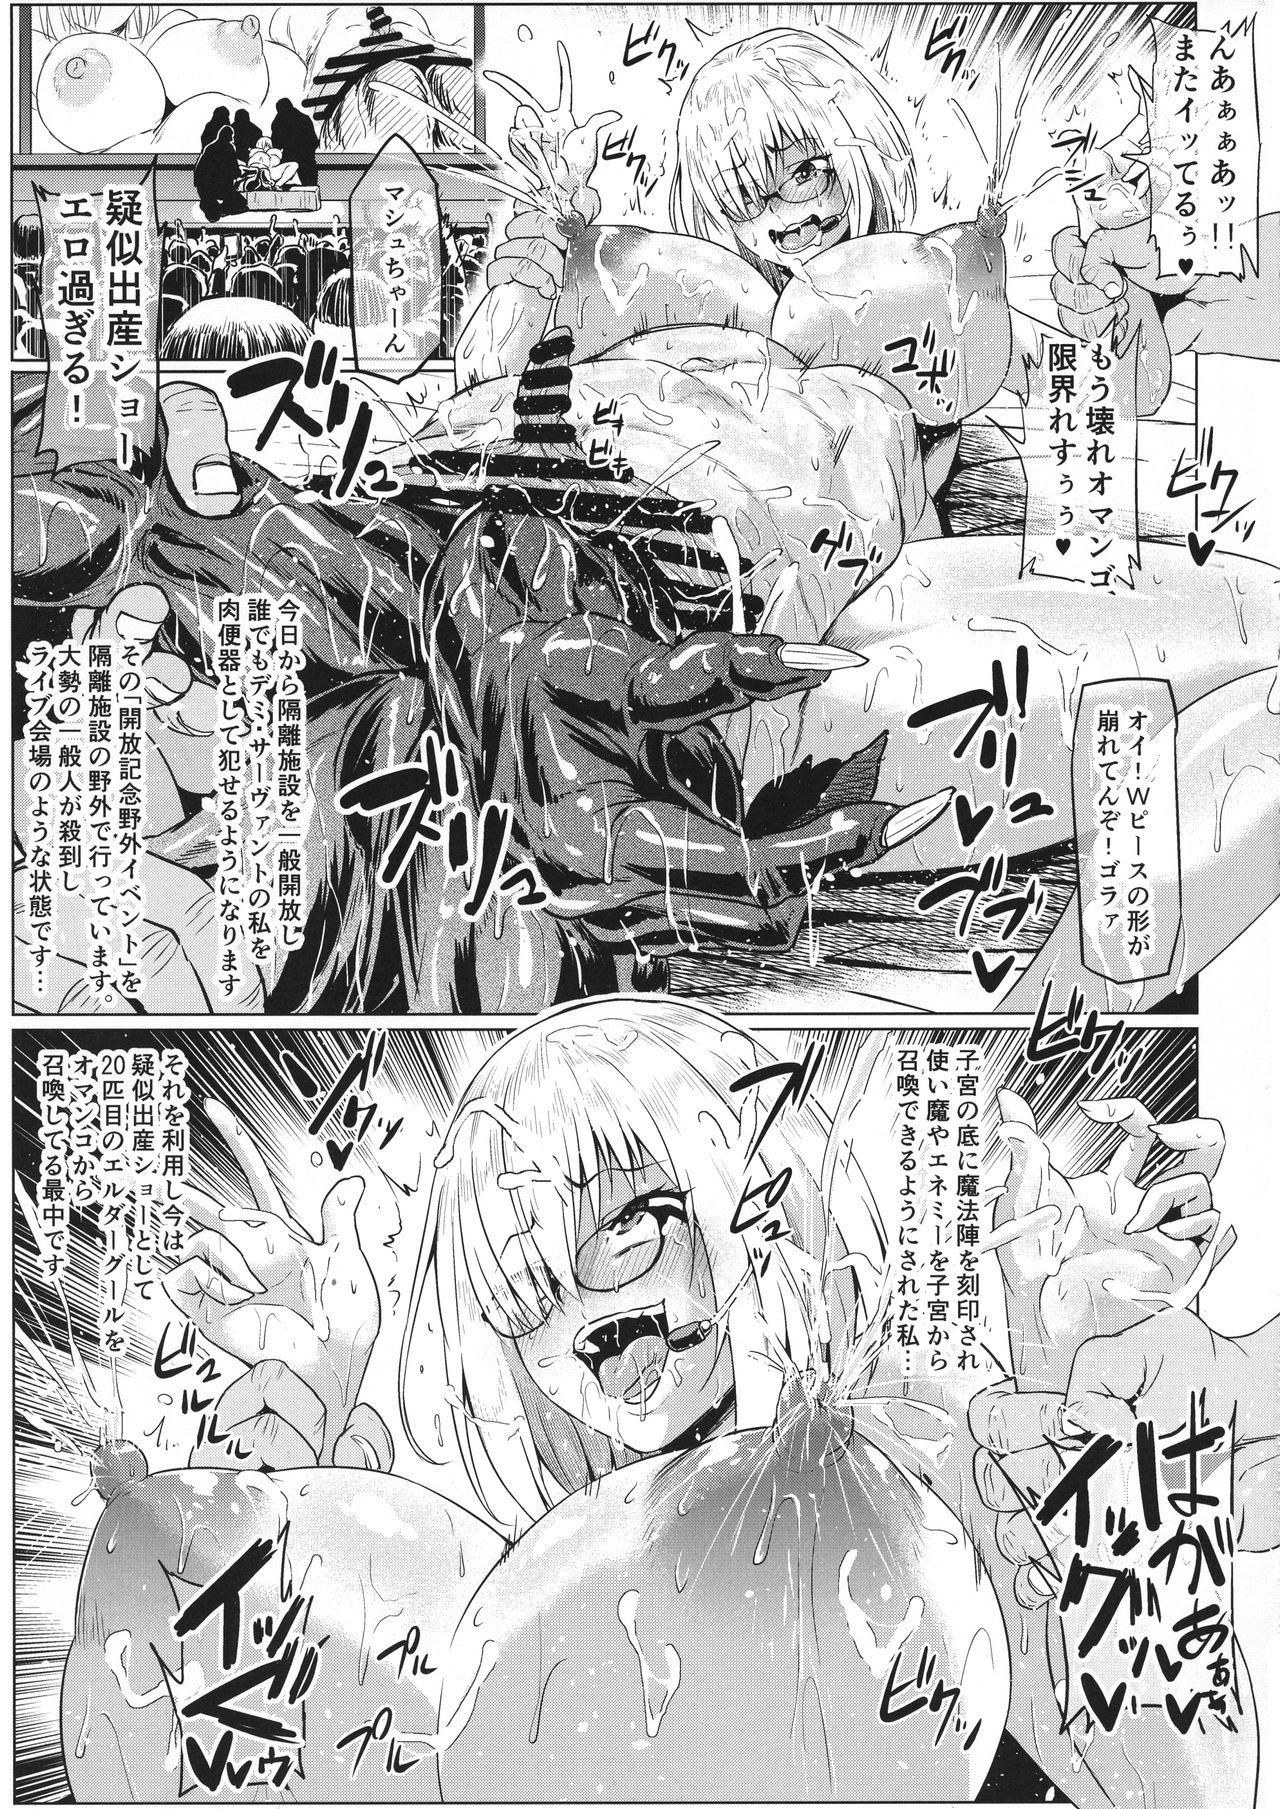 Uncut Ikimakuri Mash 3 - Fate grand order Alone - Page 5